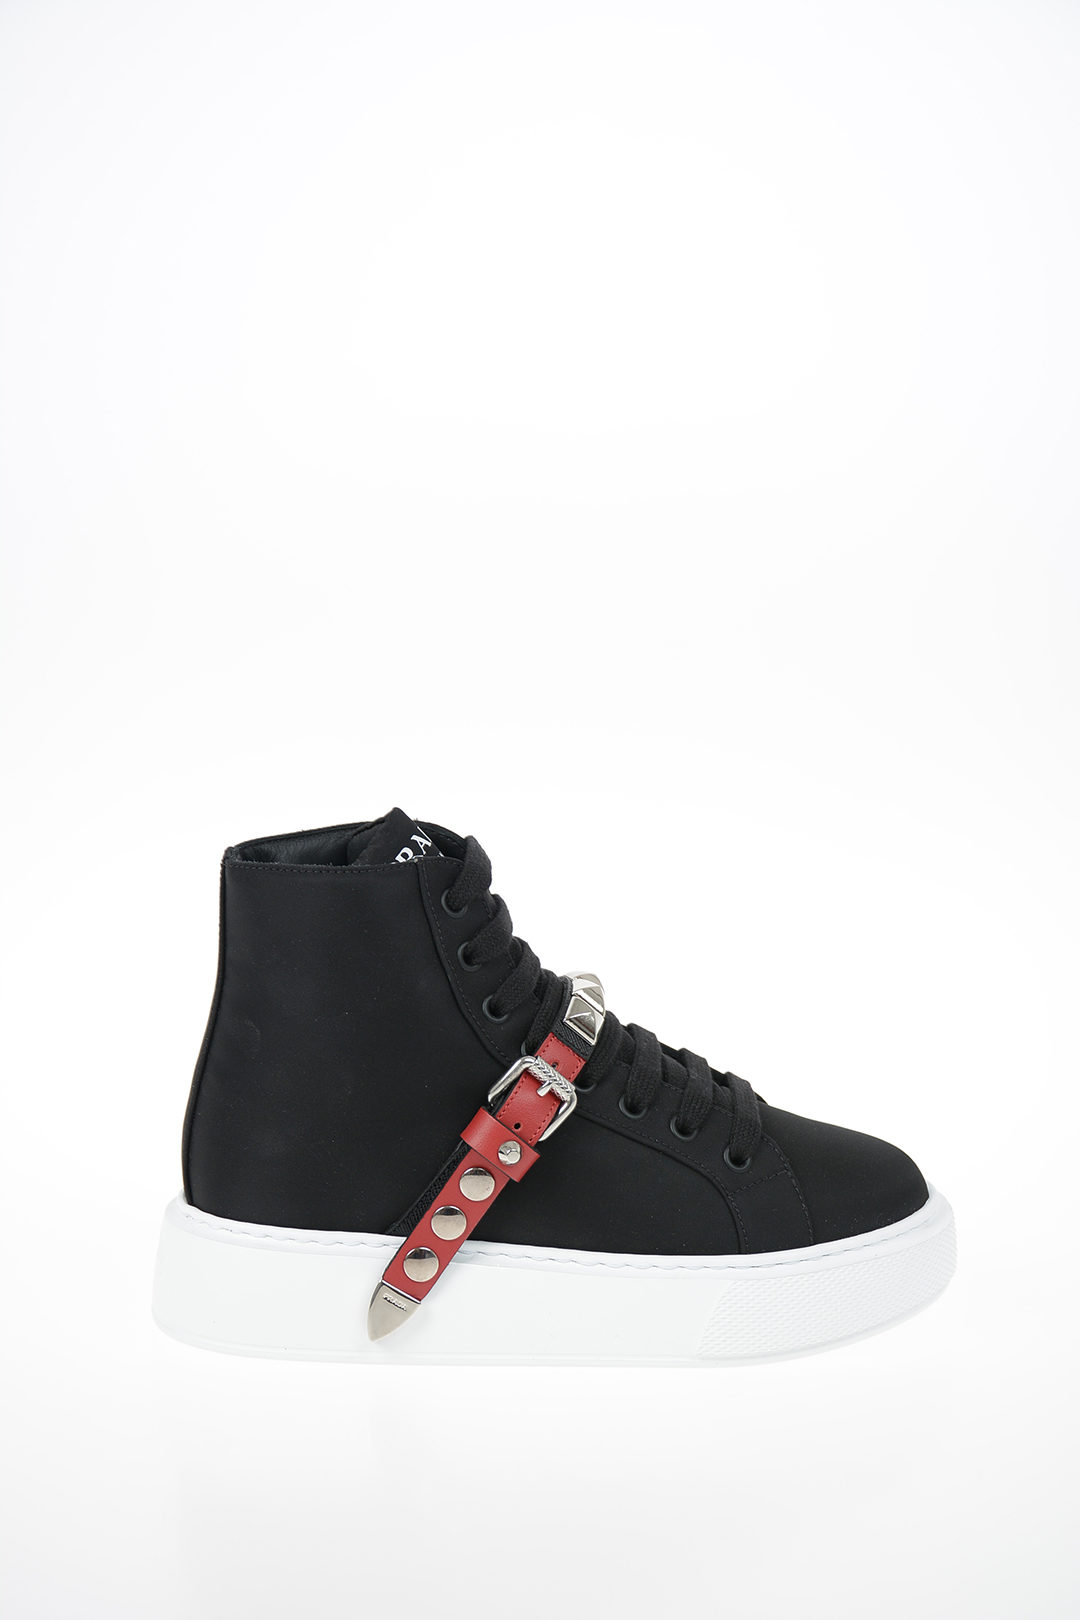 Prada Black Nylon Prax Low Top Sneakers Size 40 Prada | TLC